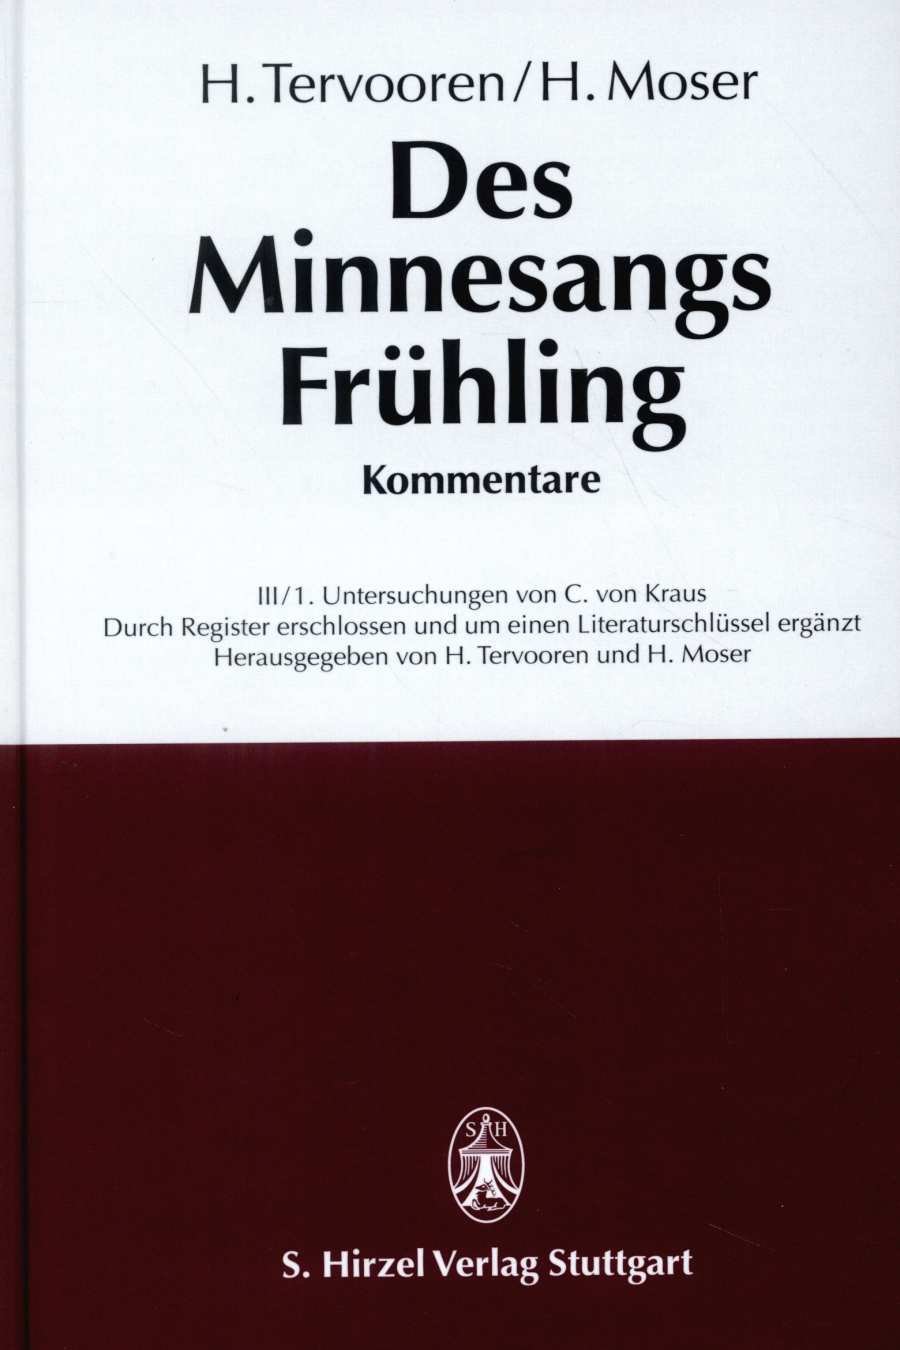 Des Minnesangs Frühling Band III Kommentare in 2 Teilen. Teil 1: Untersuchungen. Teil 2: Anmerkungen